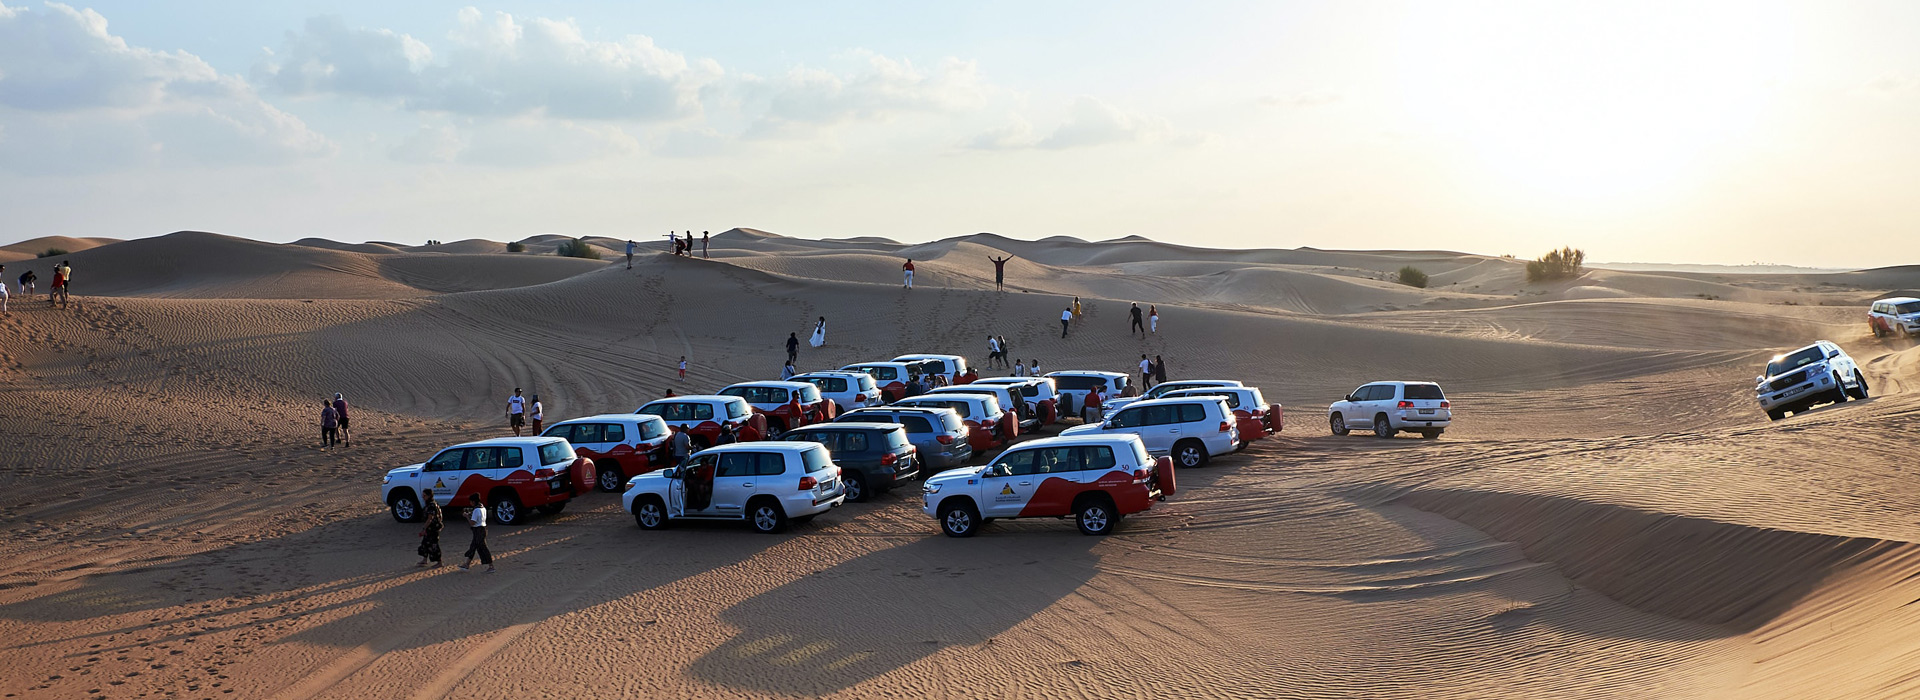 Desert safari in Al Ain | Desert safari in Dubai